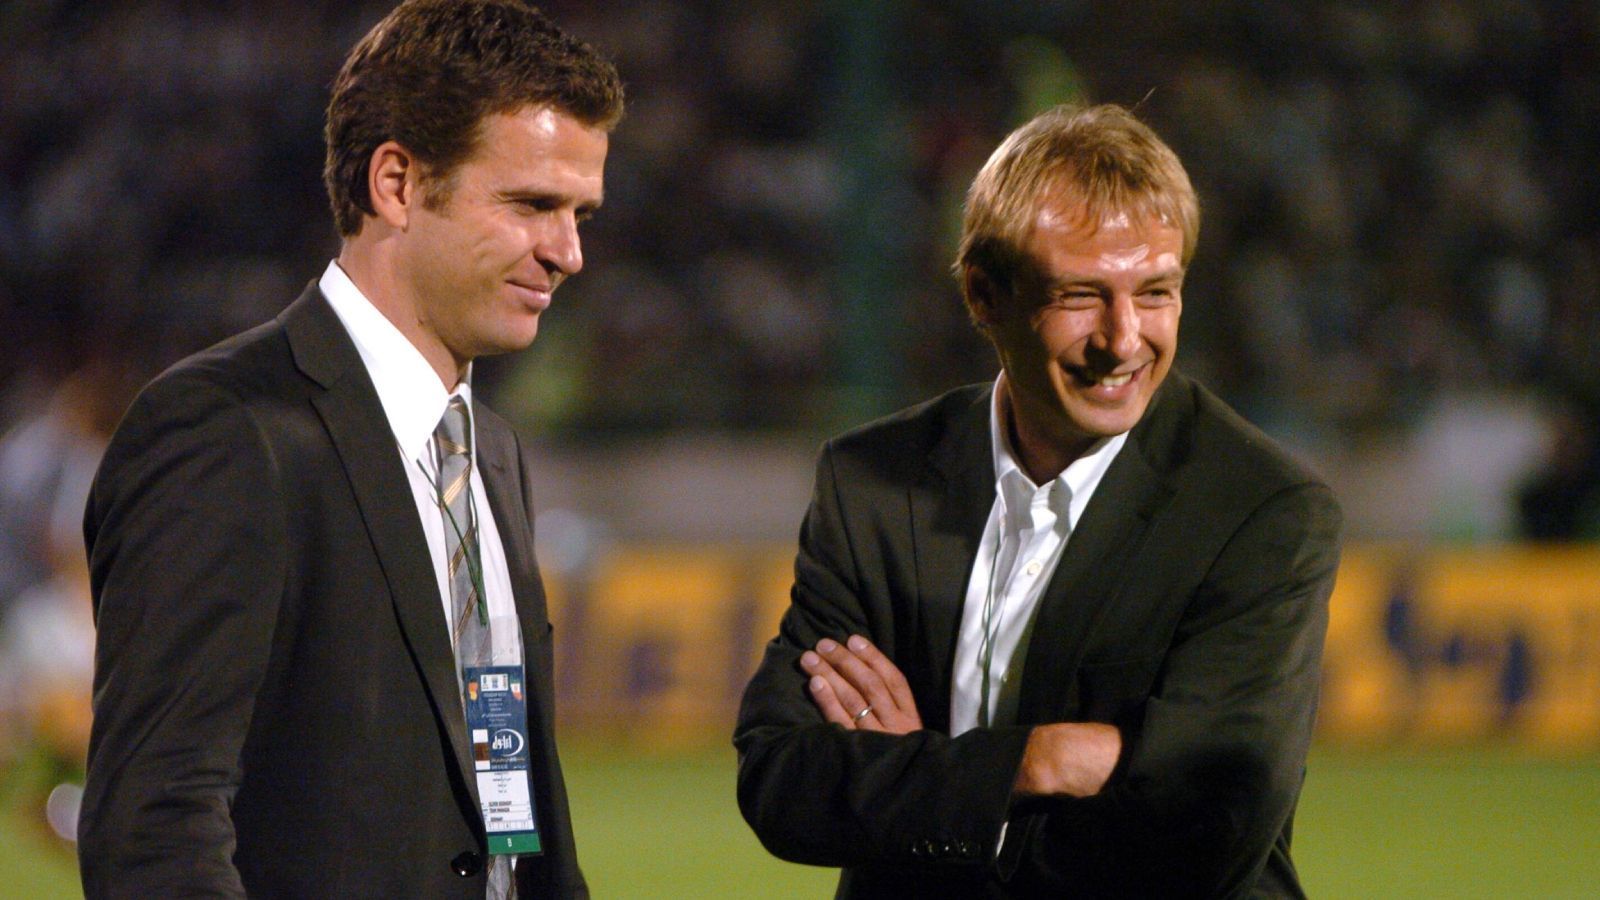 
                <strong>2004: Bierhoff geht gemeinsam mit Klinsmann zum DFB</strong><br>
                Nach dem Debakel bei der Europameisterschaft 2004, bei der Vizeweltmeister Deutschland bereits in der Gruppenphase ausschied, wurde Teamchef Rudi Völler durch das Gespann aus Cheftrainer Jürgen Klinsmann und Sportdirektor Oliver Bierhoff ersetzt. Beide sollten das Team für die Weltmeisterschaft im eigenen Land auf Vordermann bringen. Und das taten sie: Gemeinsam mit Co-Trainer Joachim Löw und Torwart-Trainer Andreas Köpke erreichte man Platz drei bei der Heim-WM und entfachte eine neue Euphorie im Land. Die DFB-Elf wurde nicht nur inhaltlich, sondern auch spielerisch reformiert.
              